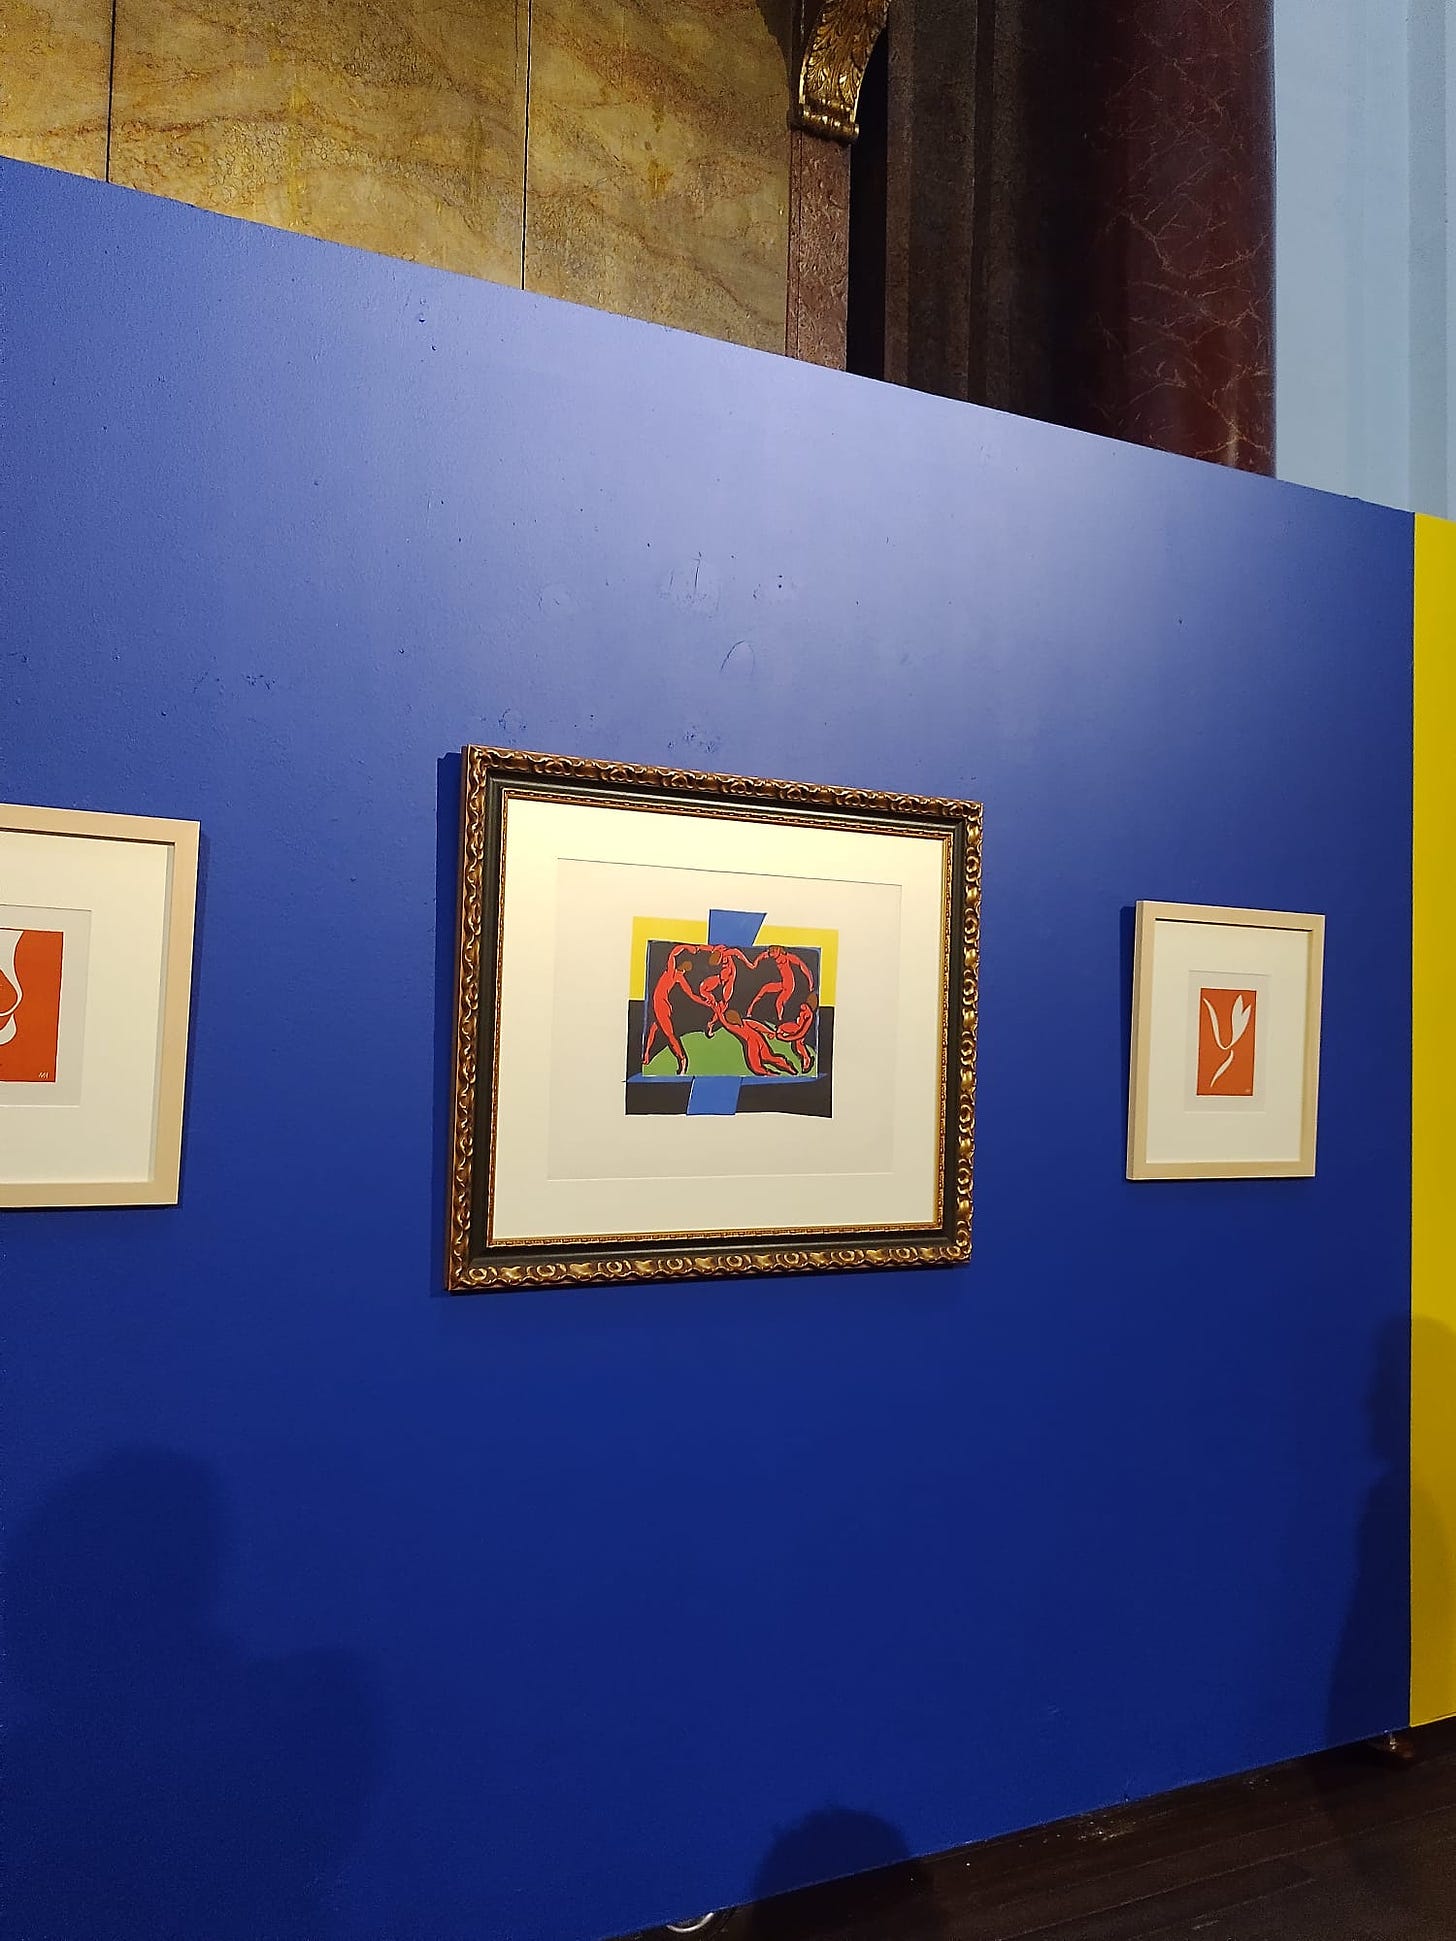 parede azul onde estão pendurados três quadros, os dois das extremidades são colagens representando flores na cor laranja. O do meio é a dança, com figuras humanas nuas dançando em roda.